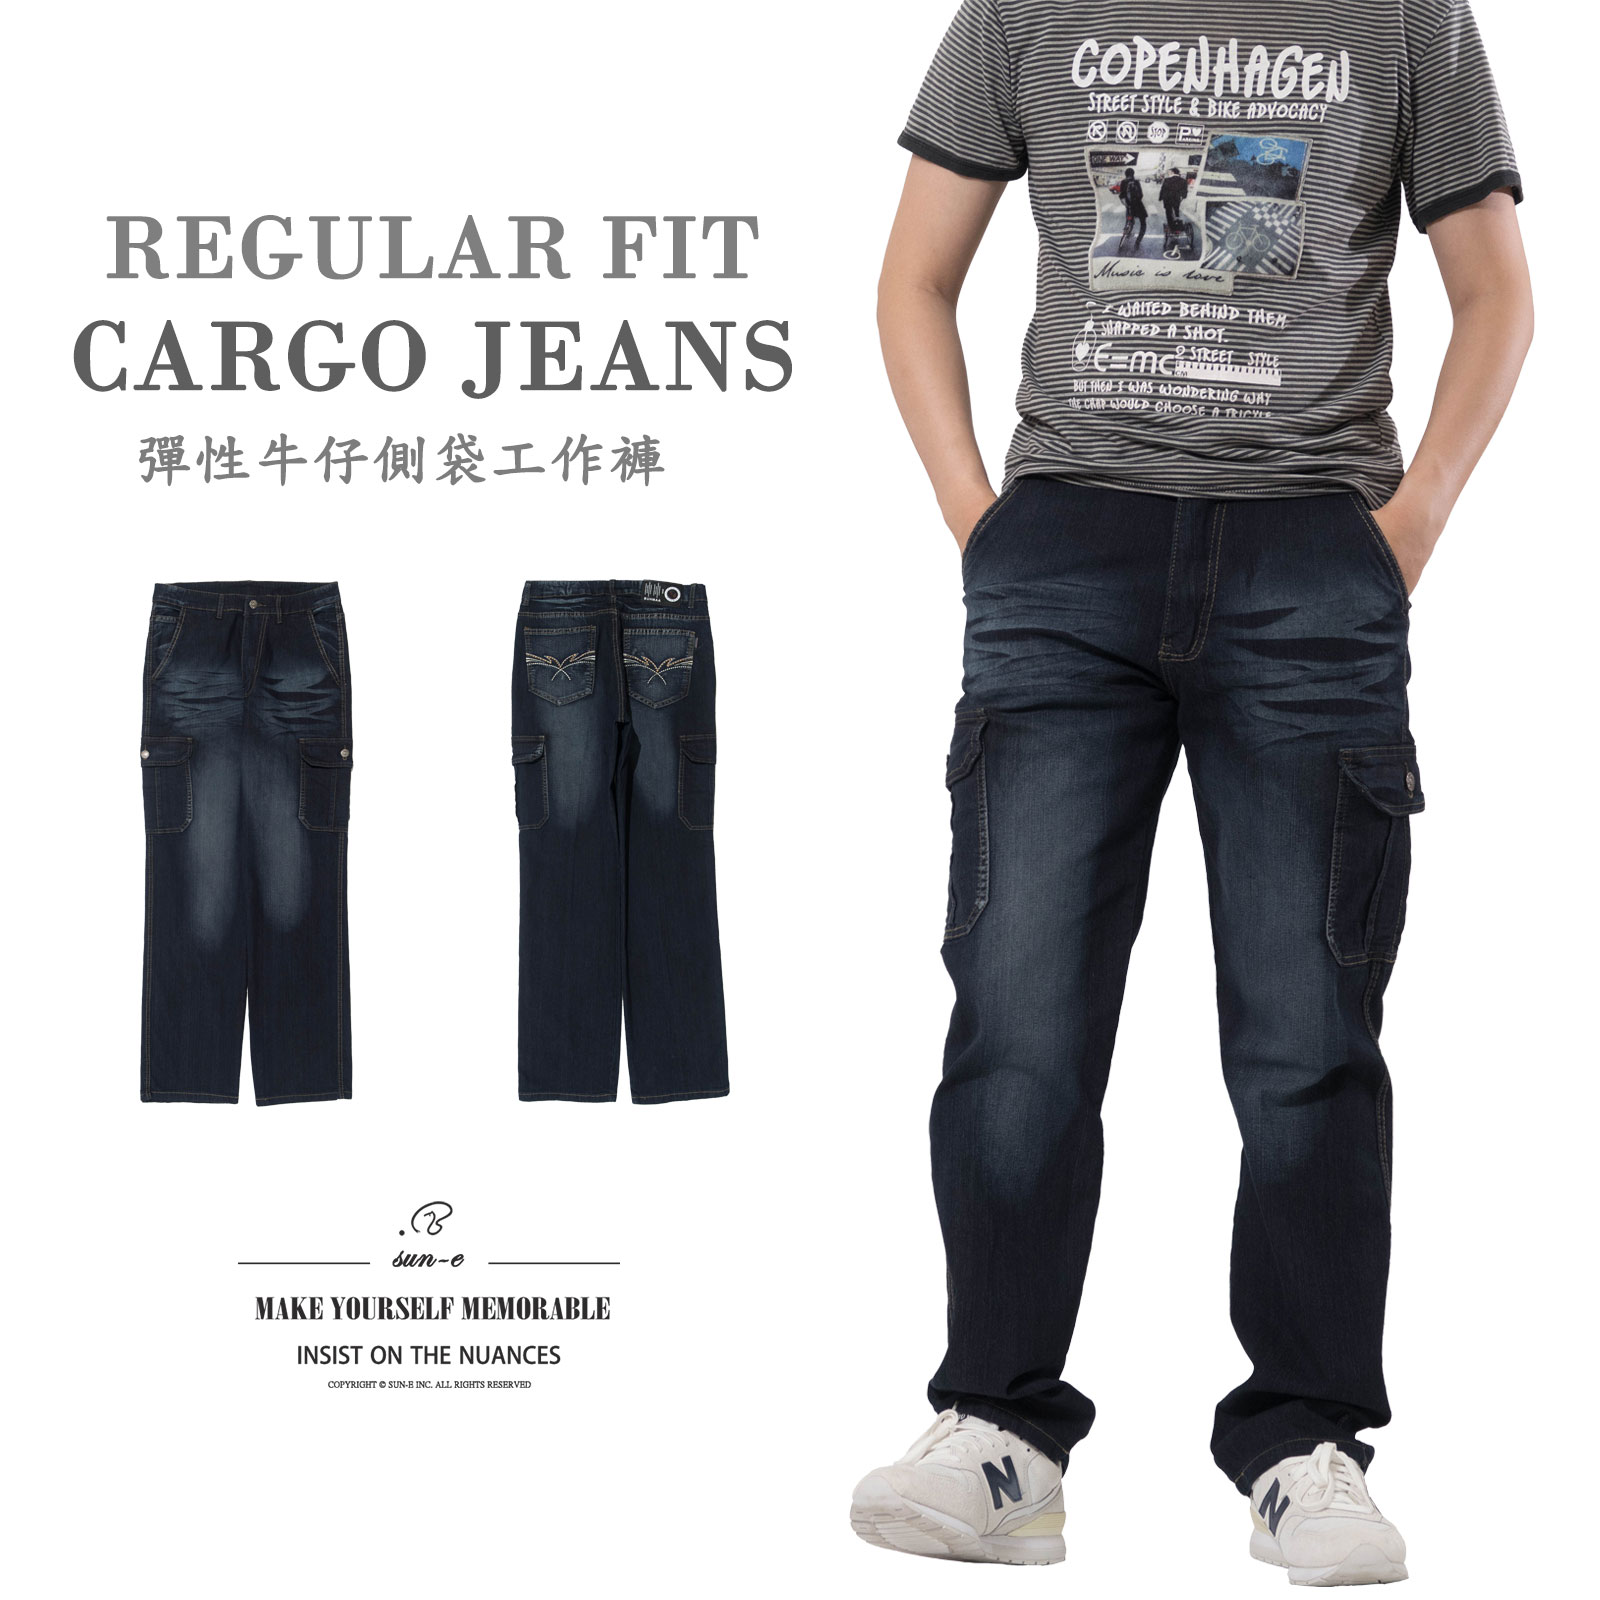 彈性牛仔側袋工作褲 中直筒彈性牛仔褲 丹寧側袋褲 多口袋工作長褲 刷白牛仔長褲 工裝褲 直筒褲 口袋褲 側貼袋長褲 車繡後口袋 Cargo Jeans Denim Cargo Pants Regular Fit Jeans Embroidered Pockets (321-0117-21)深牛仔 L XL 2L 3L 4L 5L (腰圍:30~41英吋/76~104公分) 男 [實體店面保障] sun-e